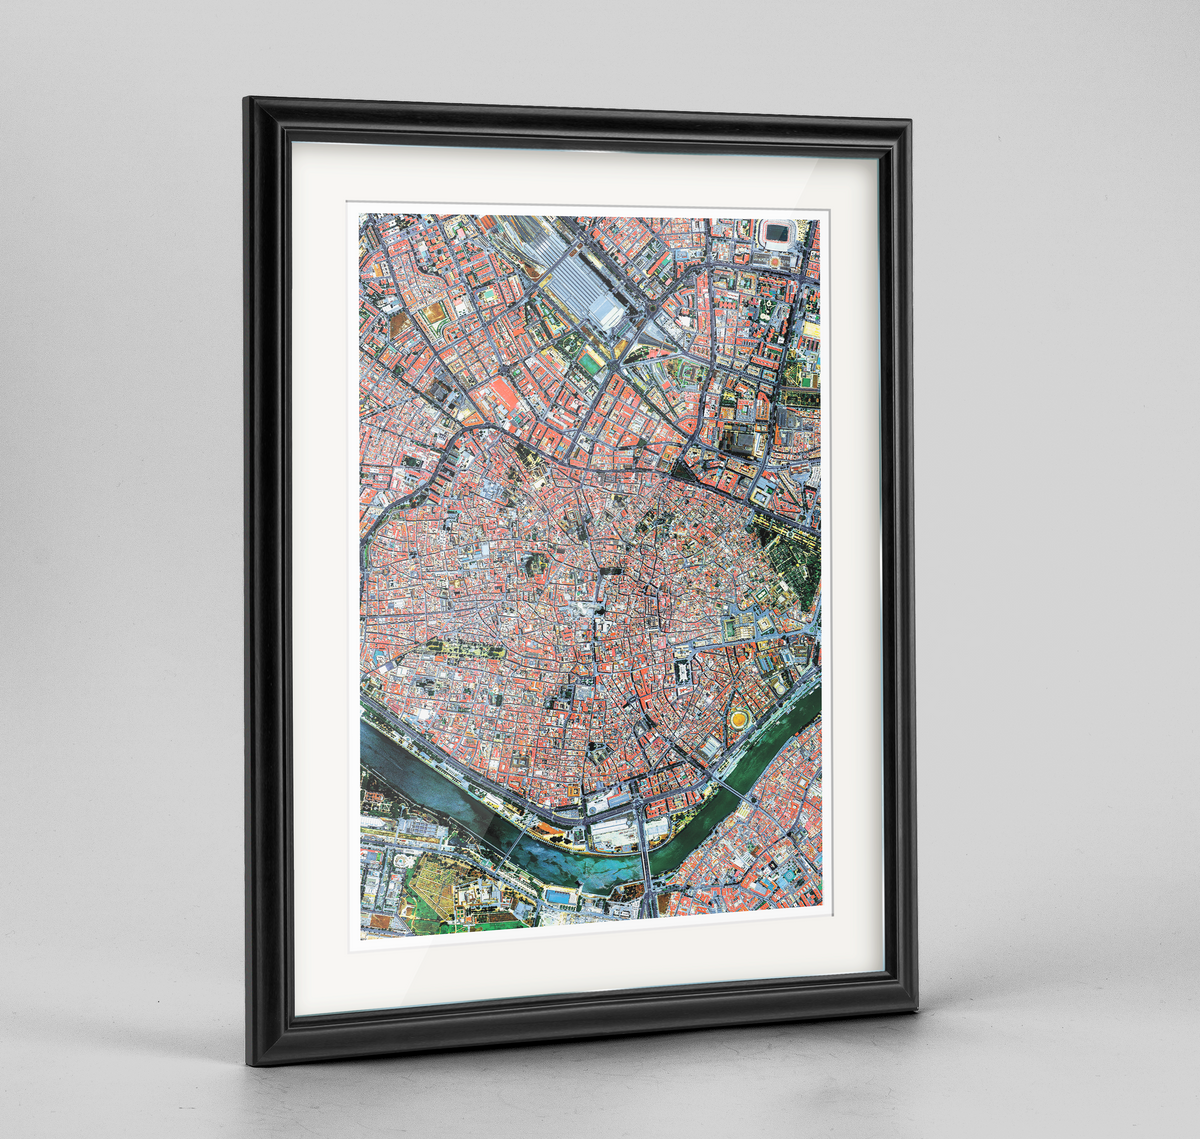 Seville Earth Photography Art Print - Framed